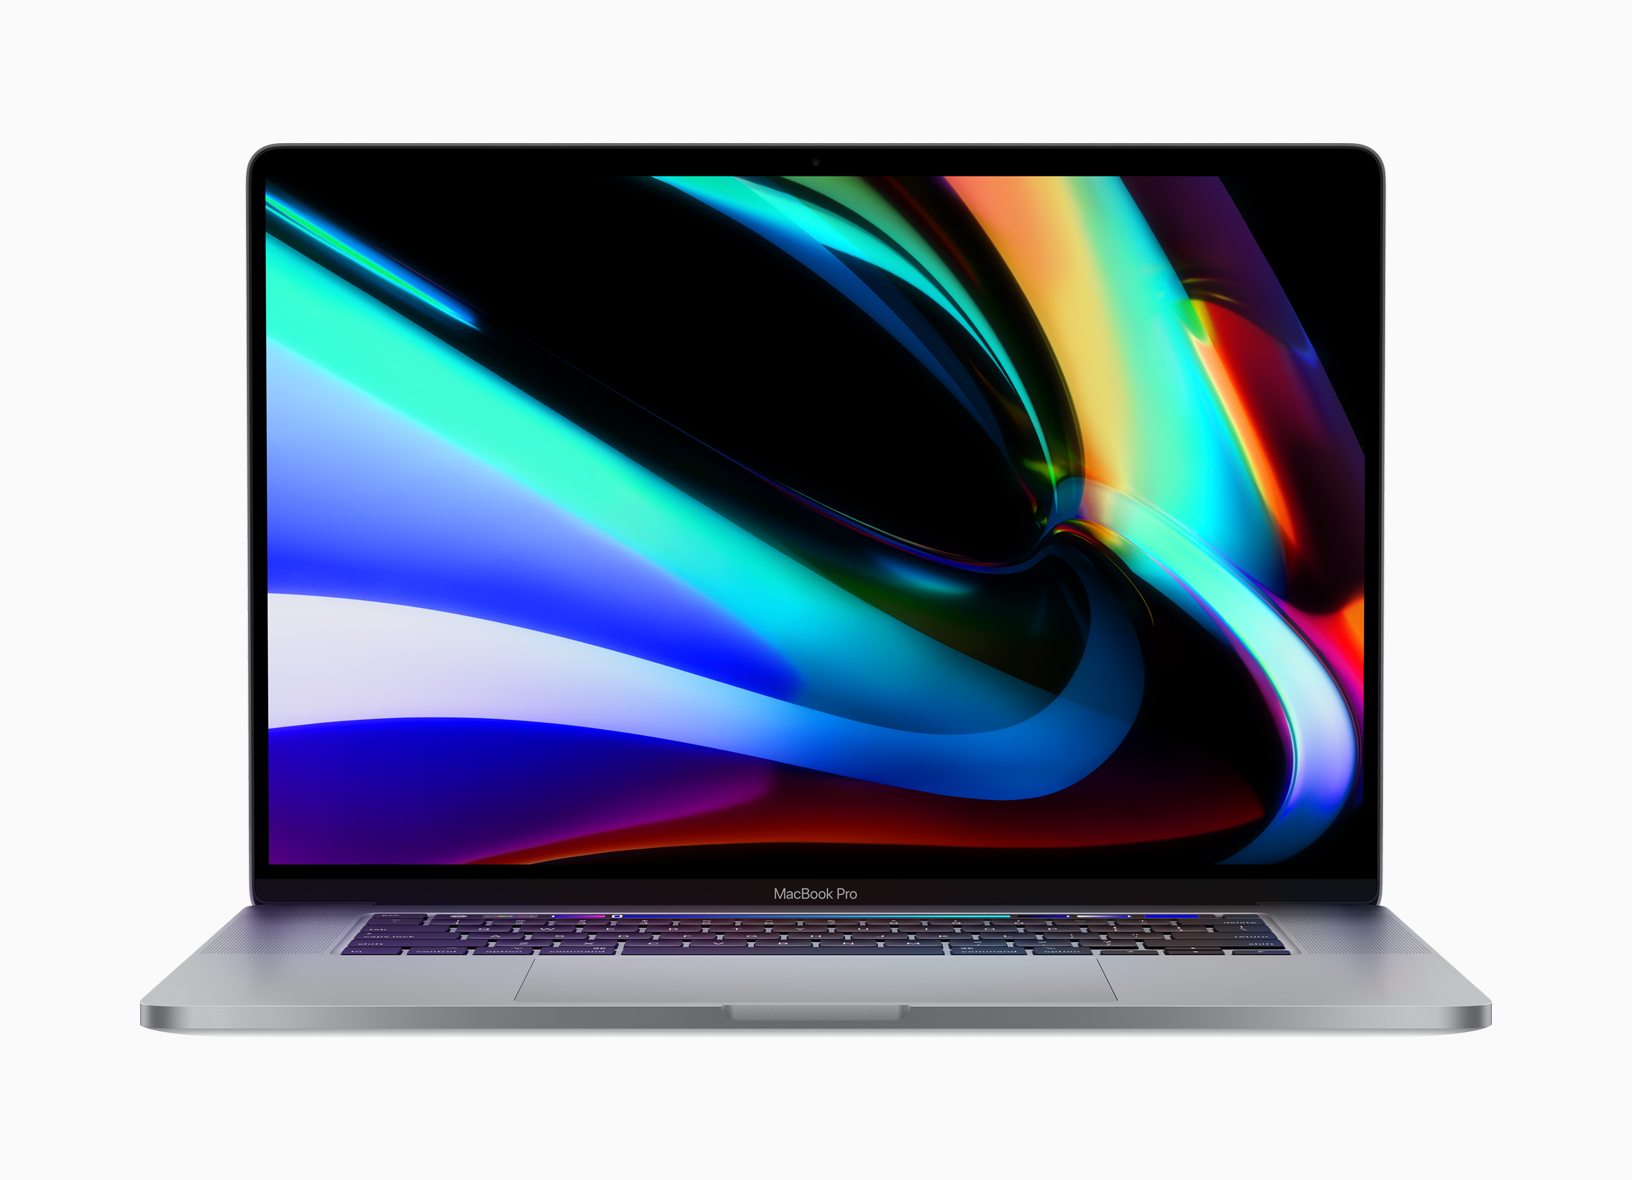 Macbook Pro 16 inch computer